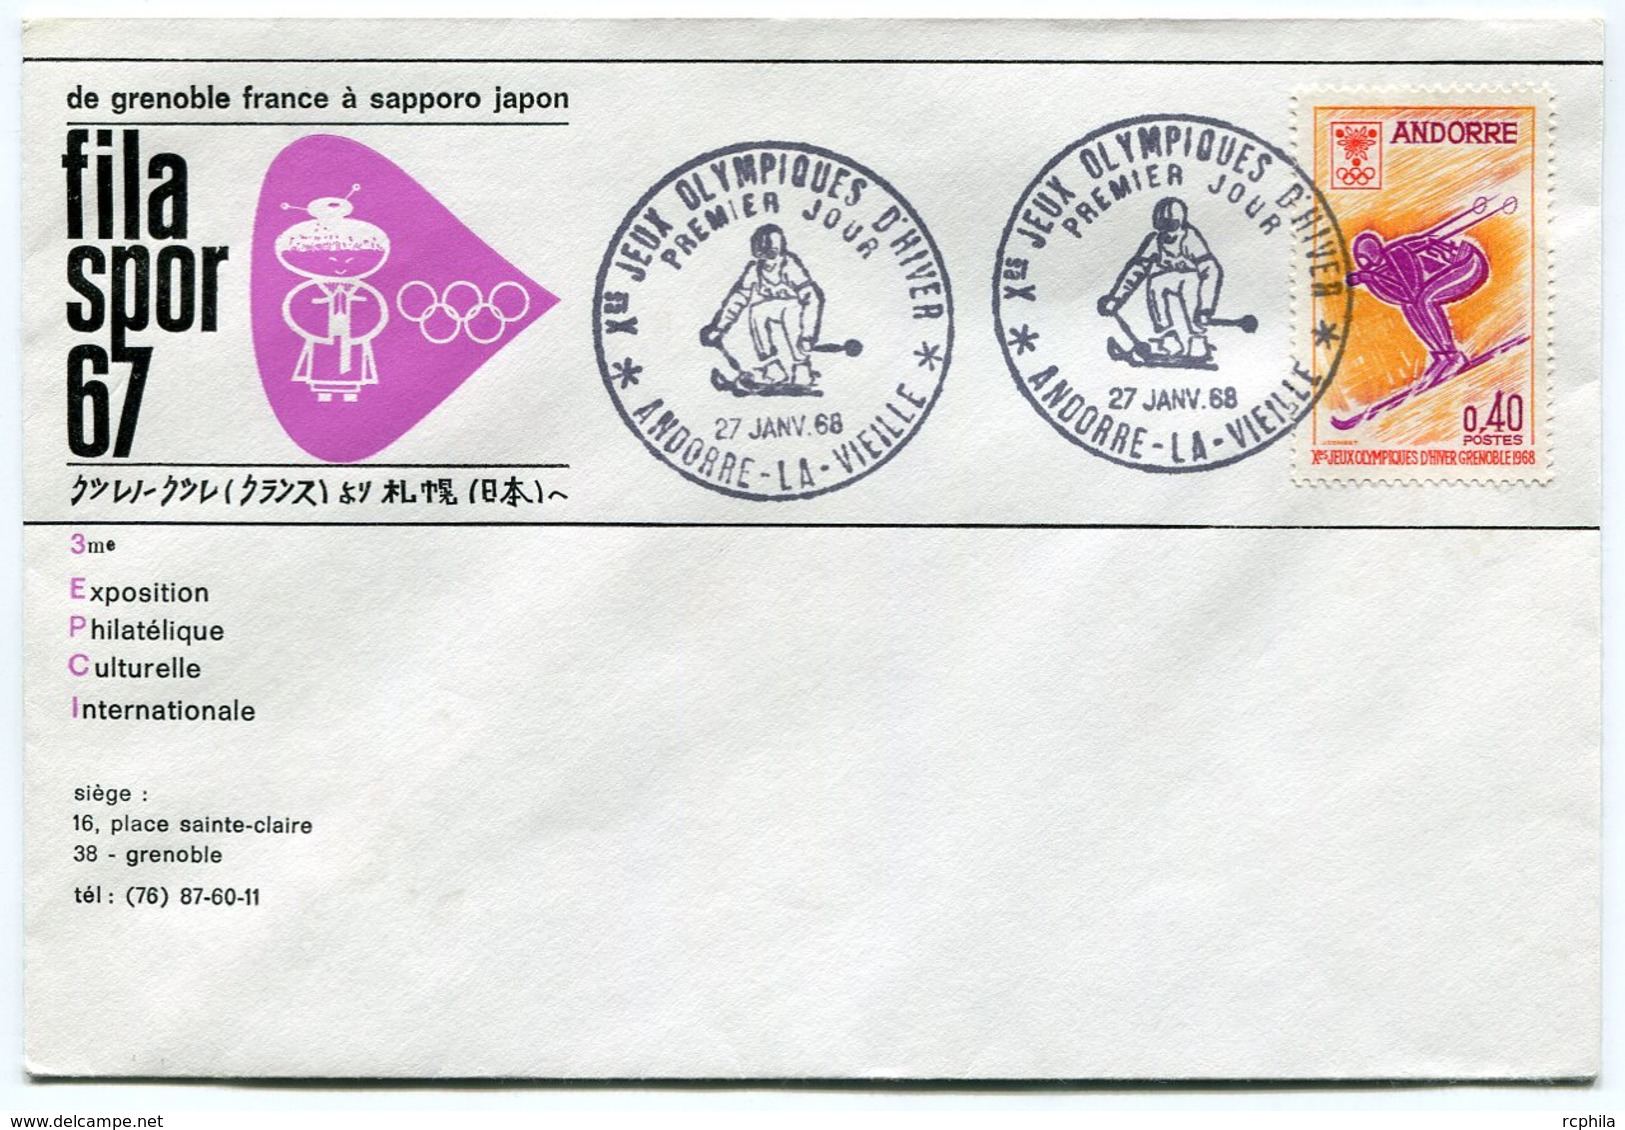 RC 10478 ANDORRE JEUX OLYMPIQUES DE GRENOBLE 1968 SKI ENVELOPPE FRANCE JAPON 1er JOUR FDC TB - Covers & Documents